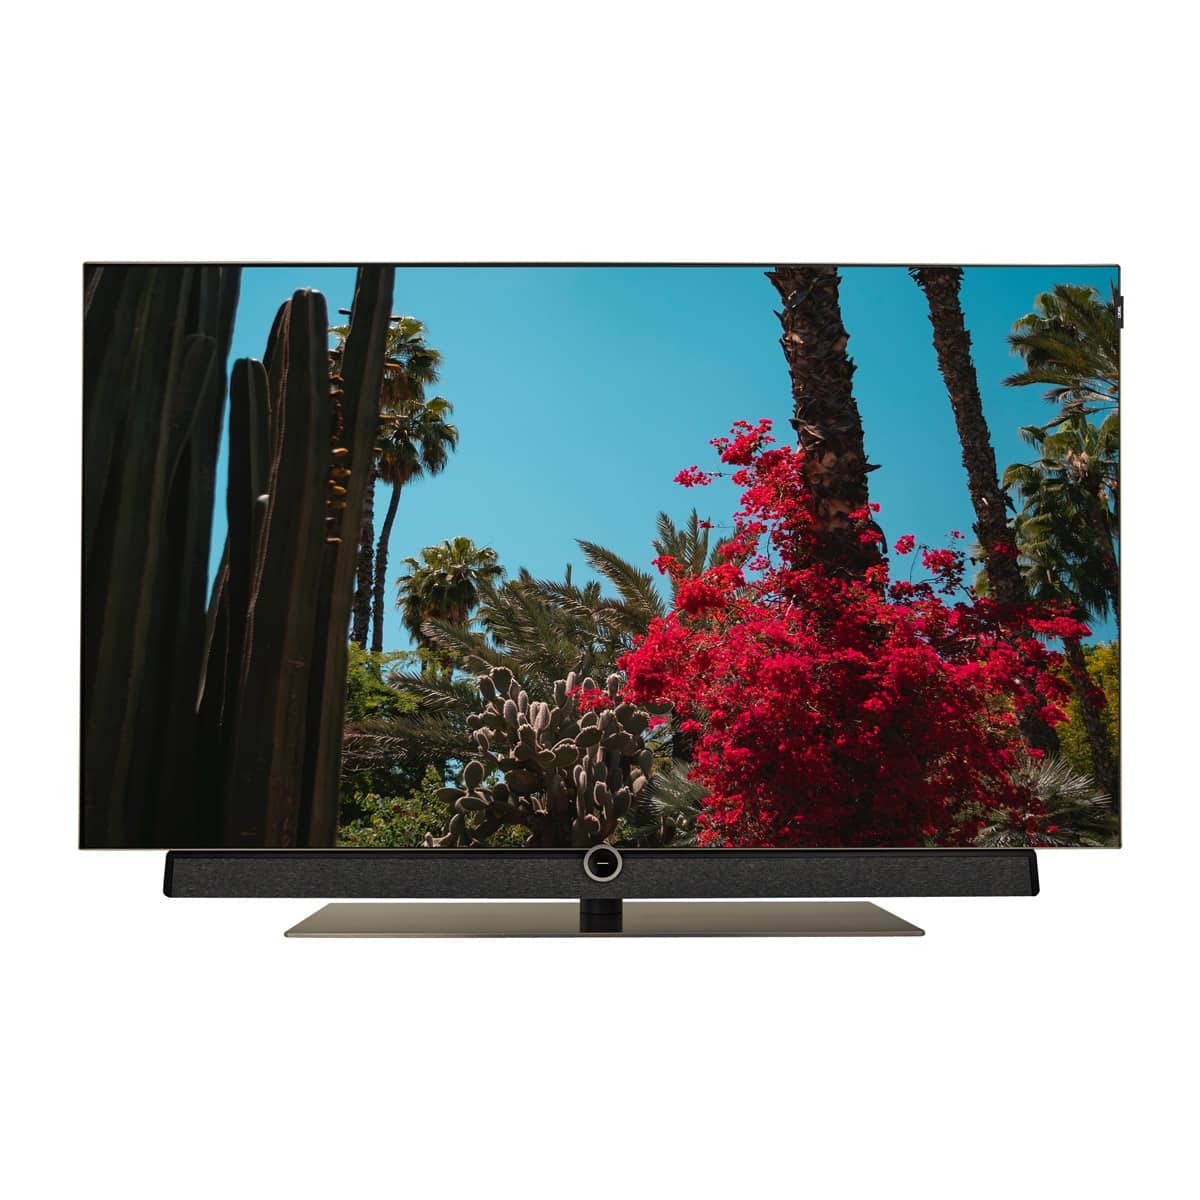 TV OLED 139 cm (55'') Loewe Bild 5.55 UHD 4K, HDR, DR+ 1 TB, Wi-Fi y Smart TV